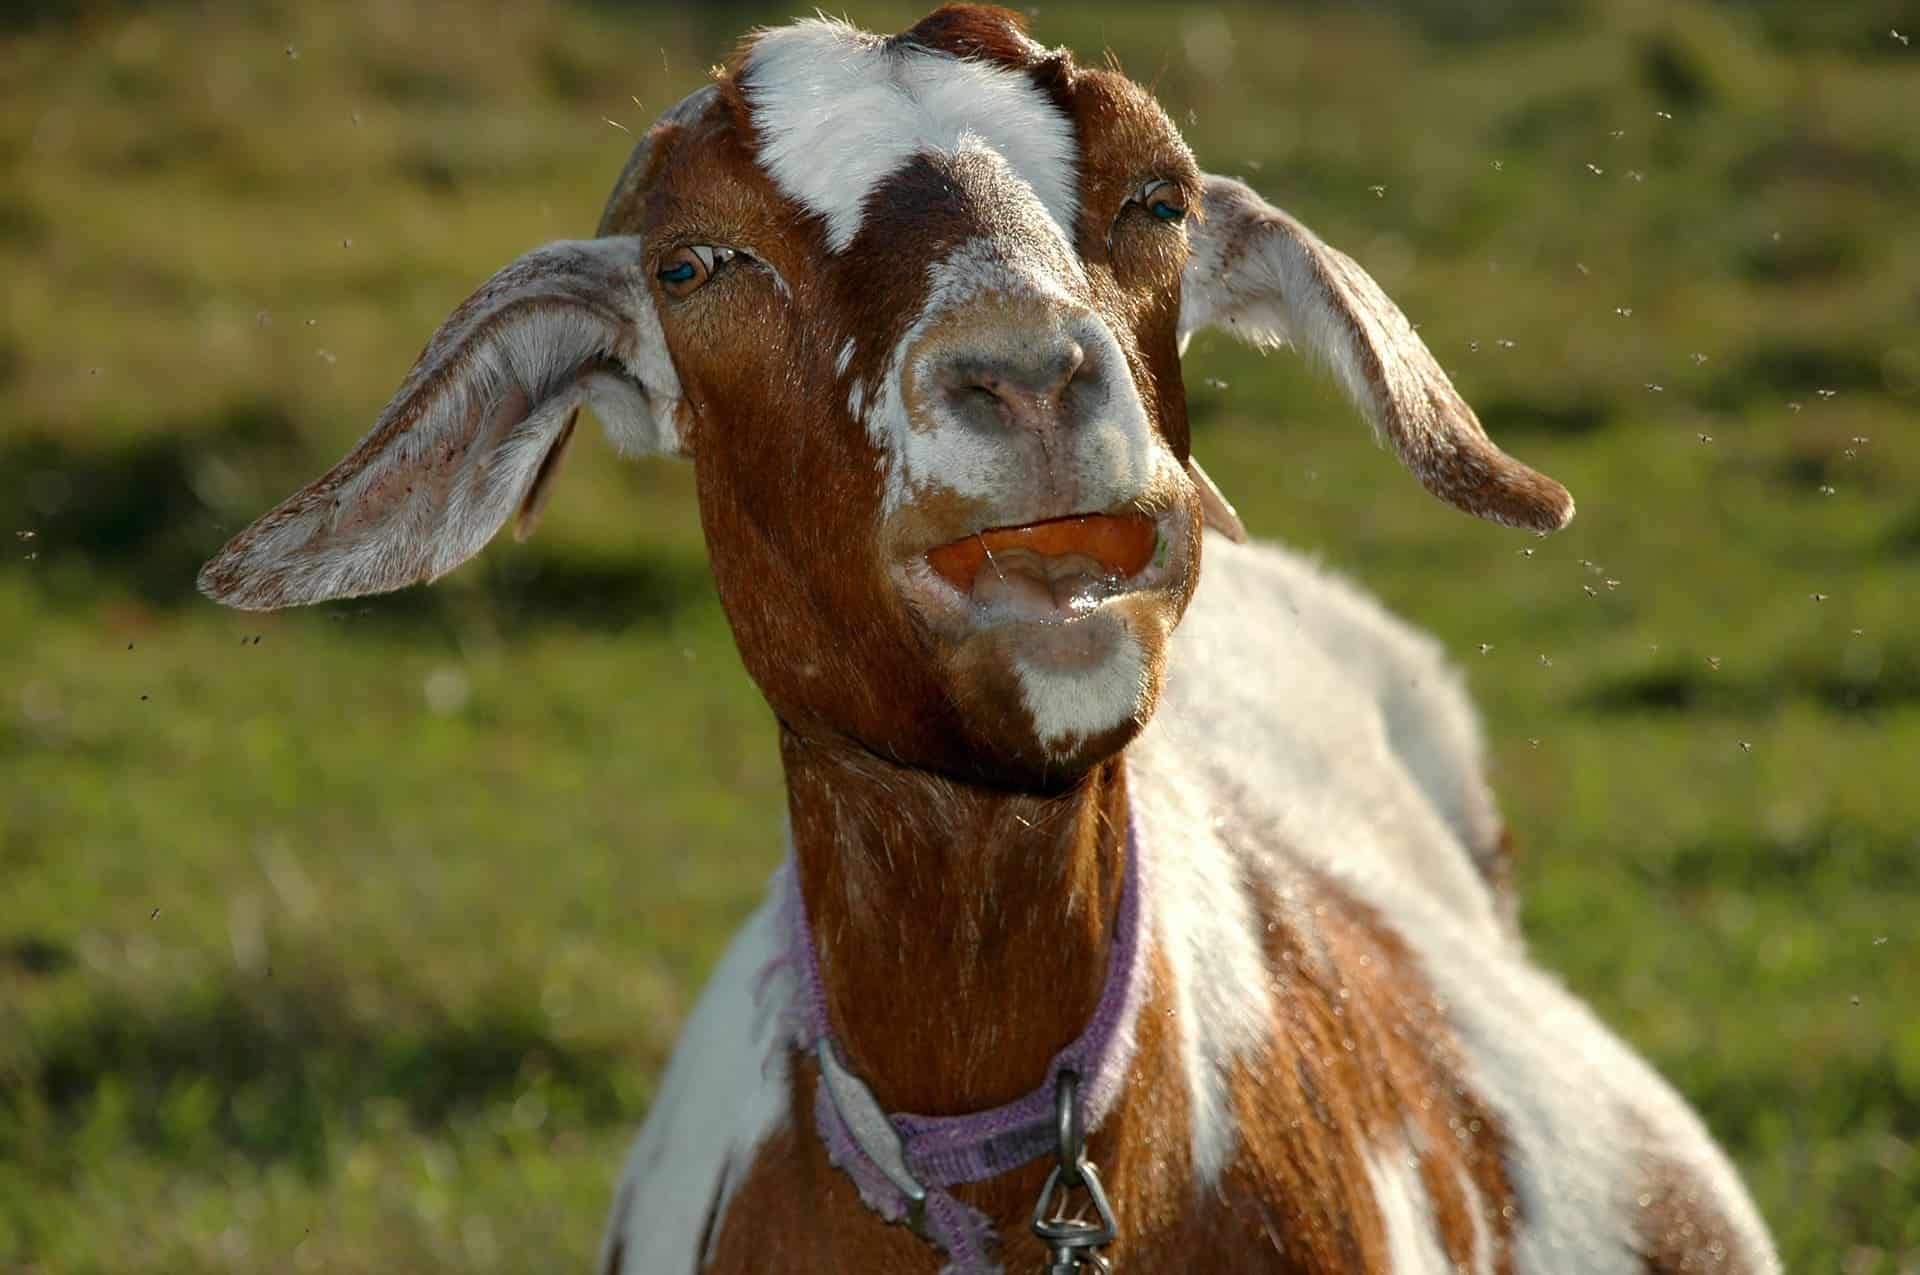 Goat eating apple